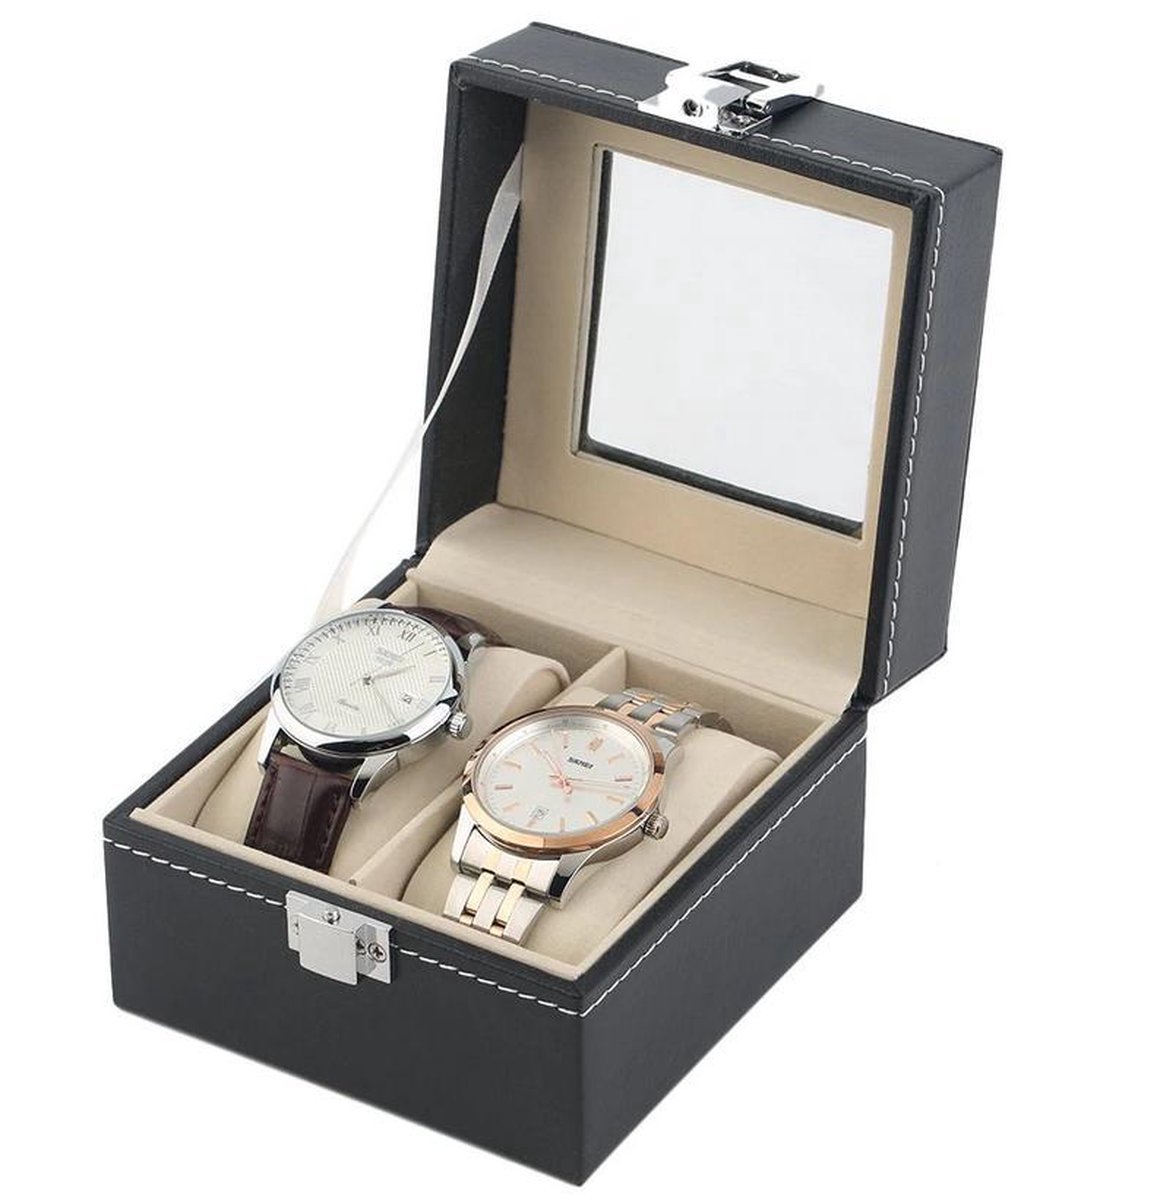 Horlogedoos | Luxe Leren Horloge Box | Geschikt voor Horloges en Sieraden | 2 Compartimenten met 2 Kussentjes | Zwart Leer V2.0